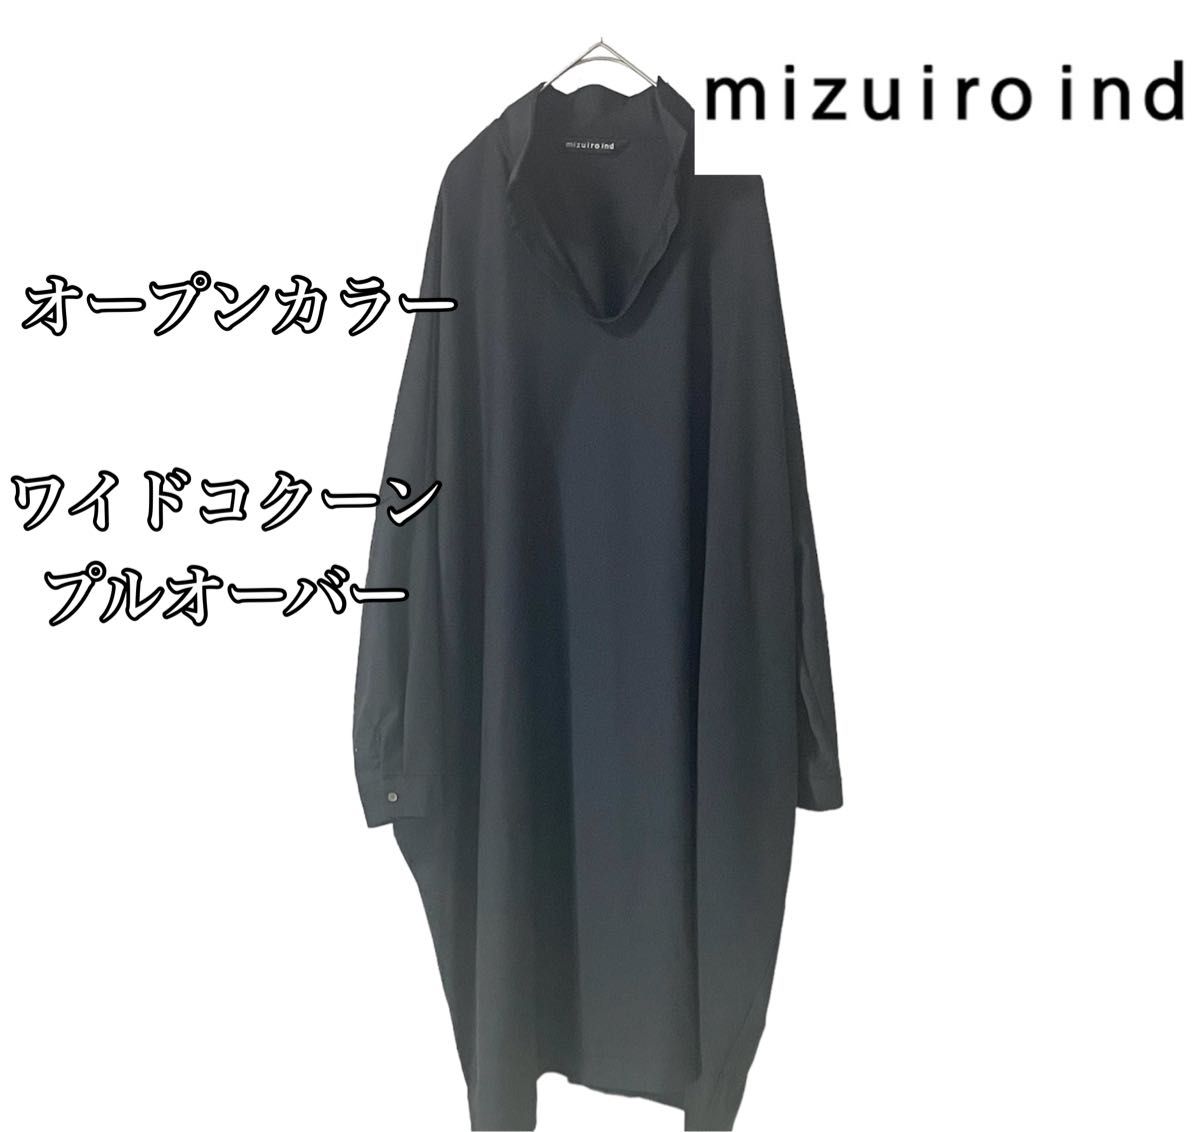 【美品】mizuiro indミズイロインド オープンカラー ワイドコクーンプルオーバーワンピース チュニック ブラック